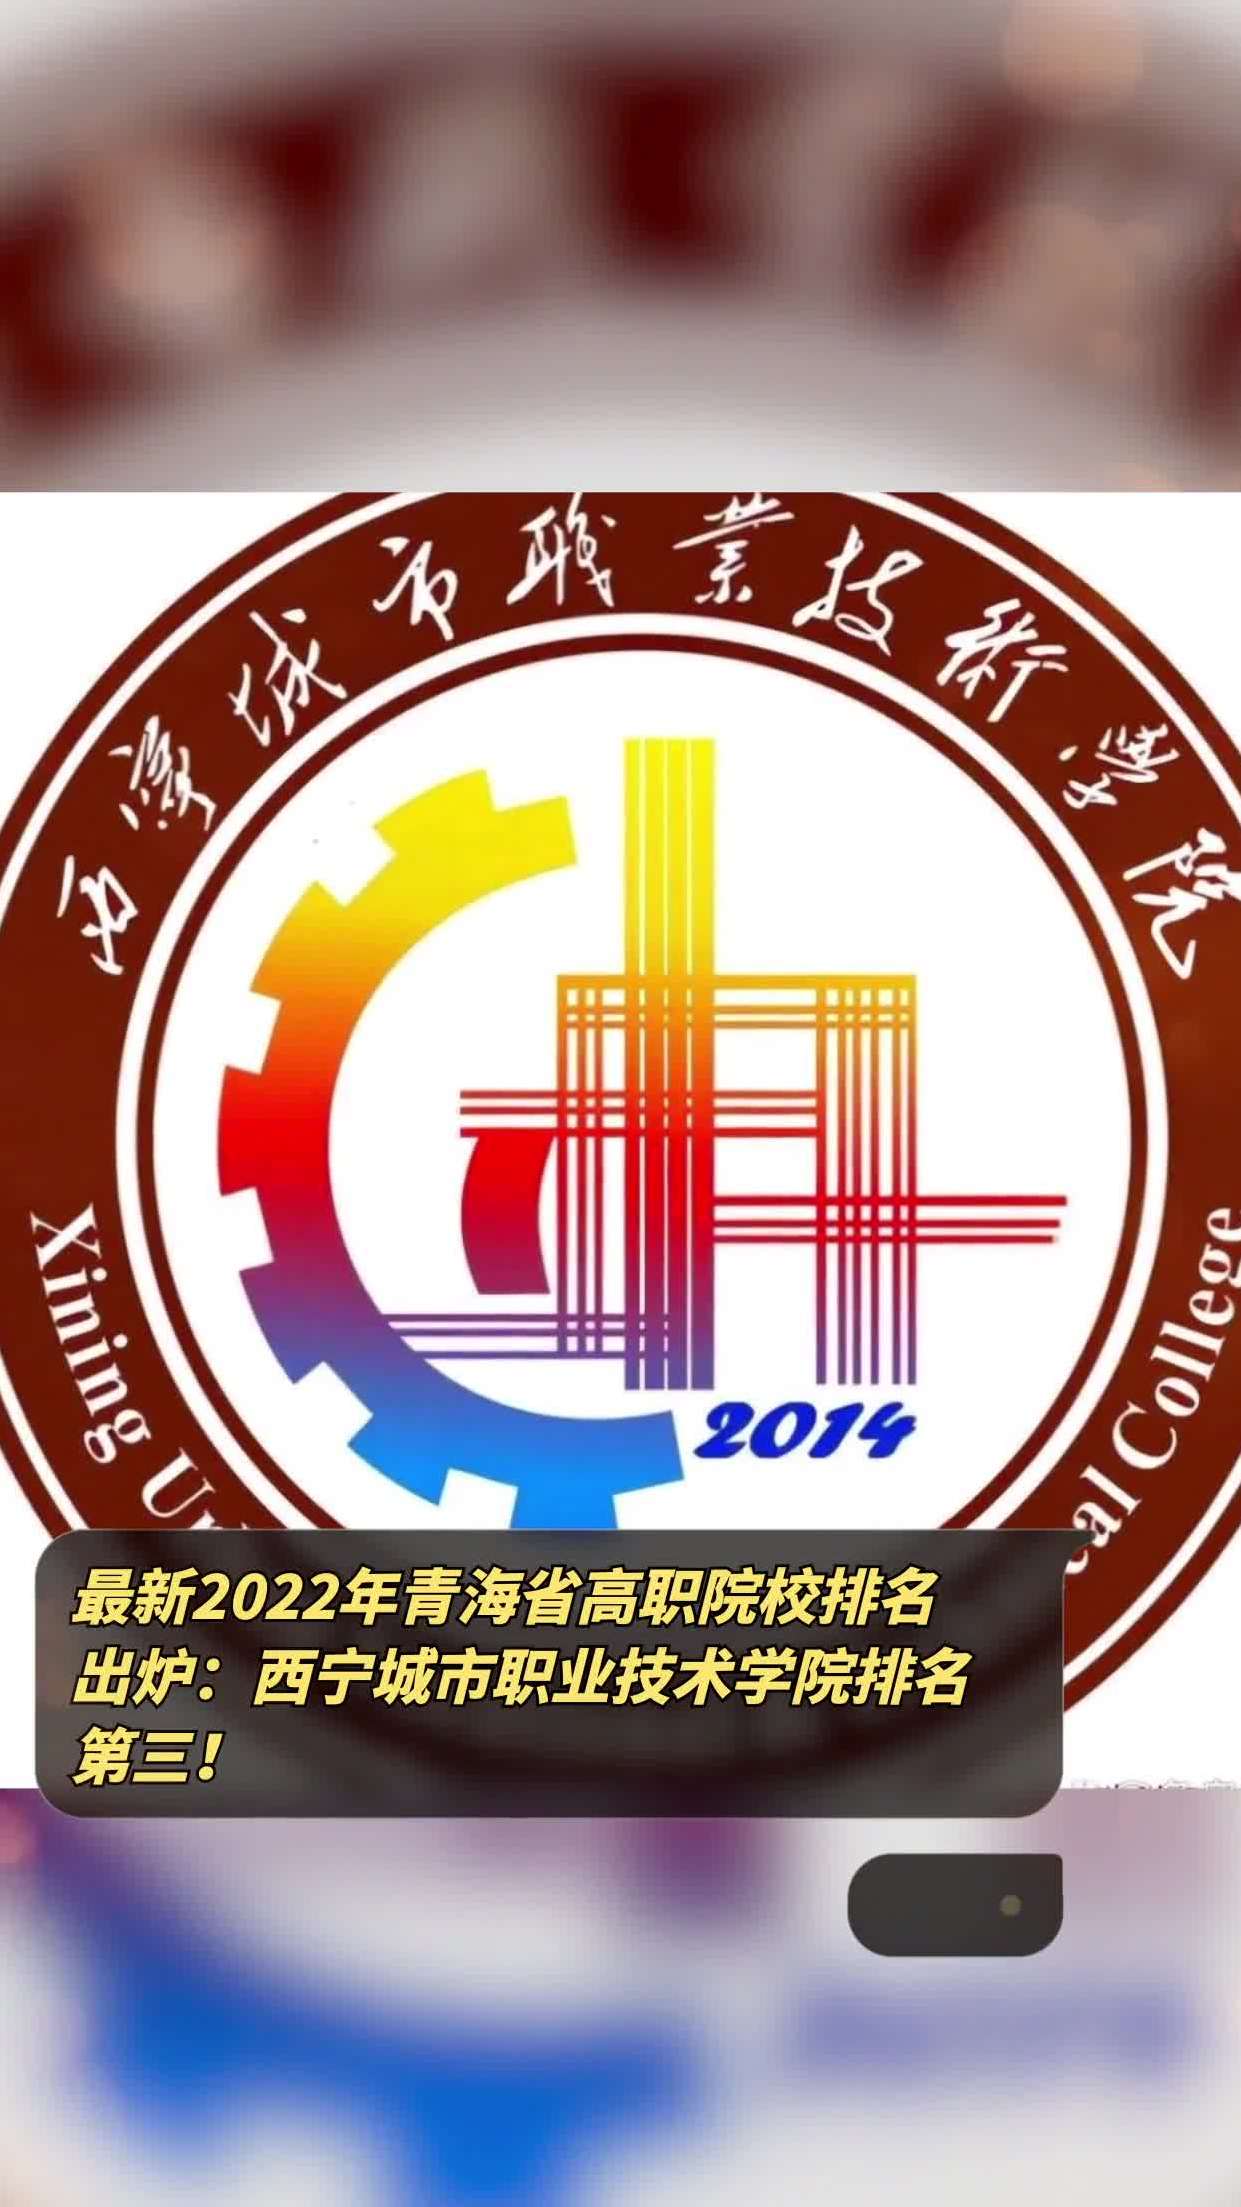 最新2022年青海省高职院校排名出炉西宁城市职业技术学院排名第三